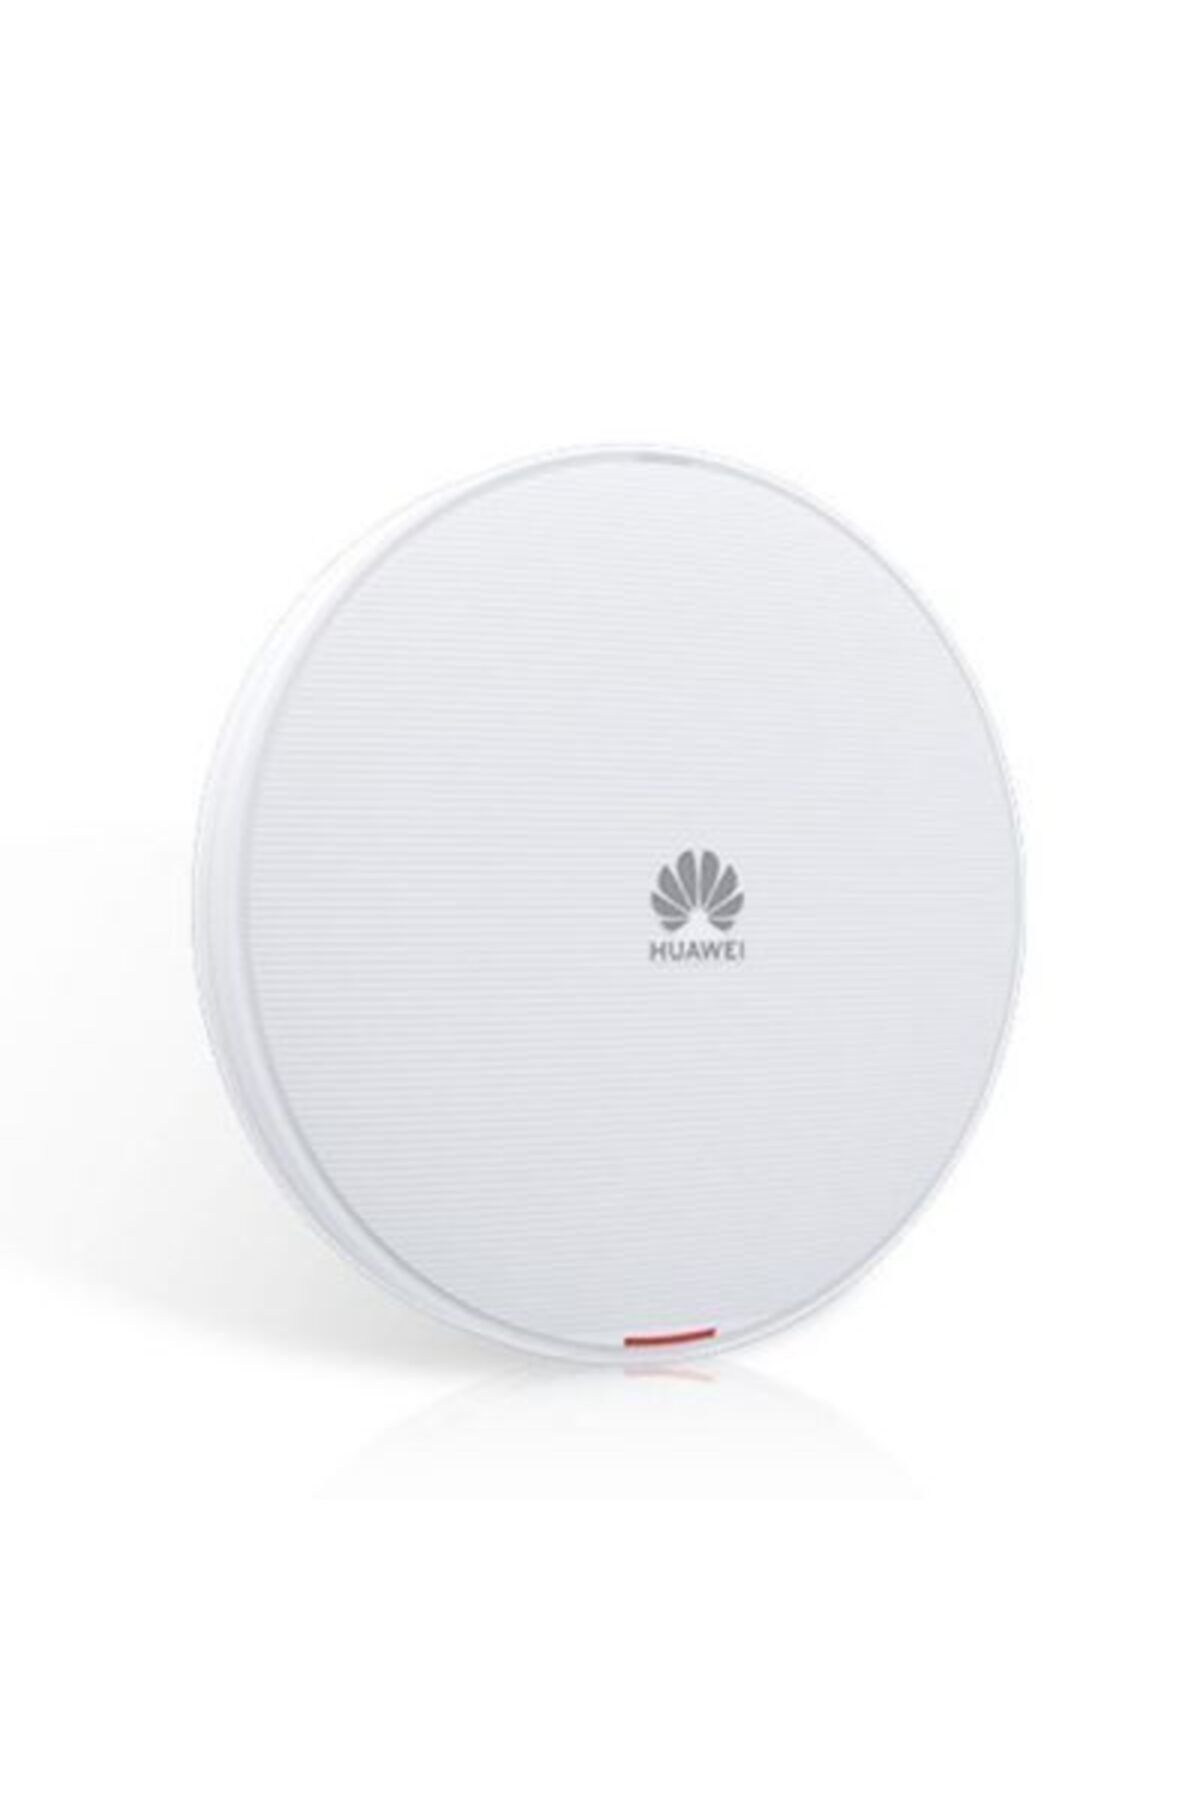 Huawei Huaweı Aırengıne5761-21 11ax Indoor 2 4 Dual Bands Smart Antenna Usb Ble